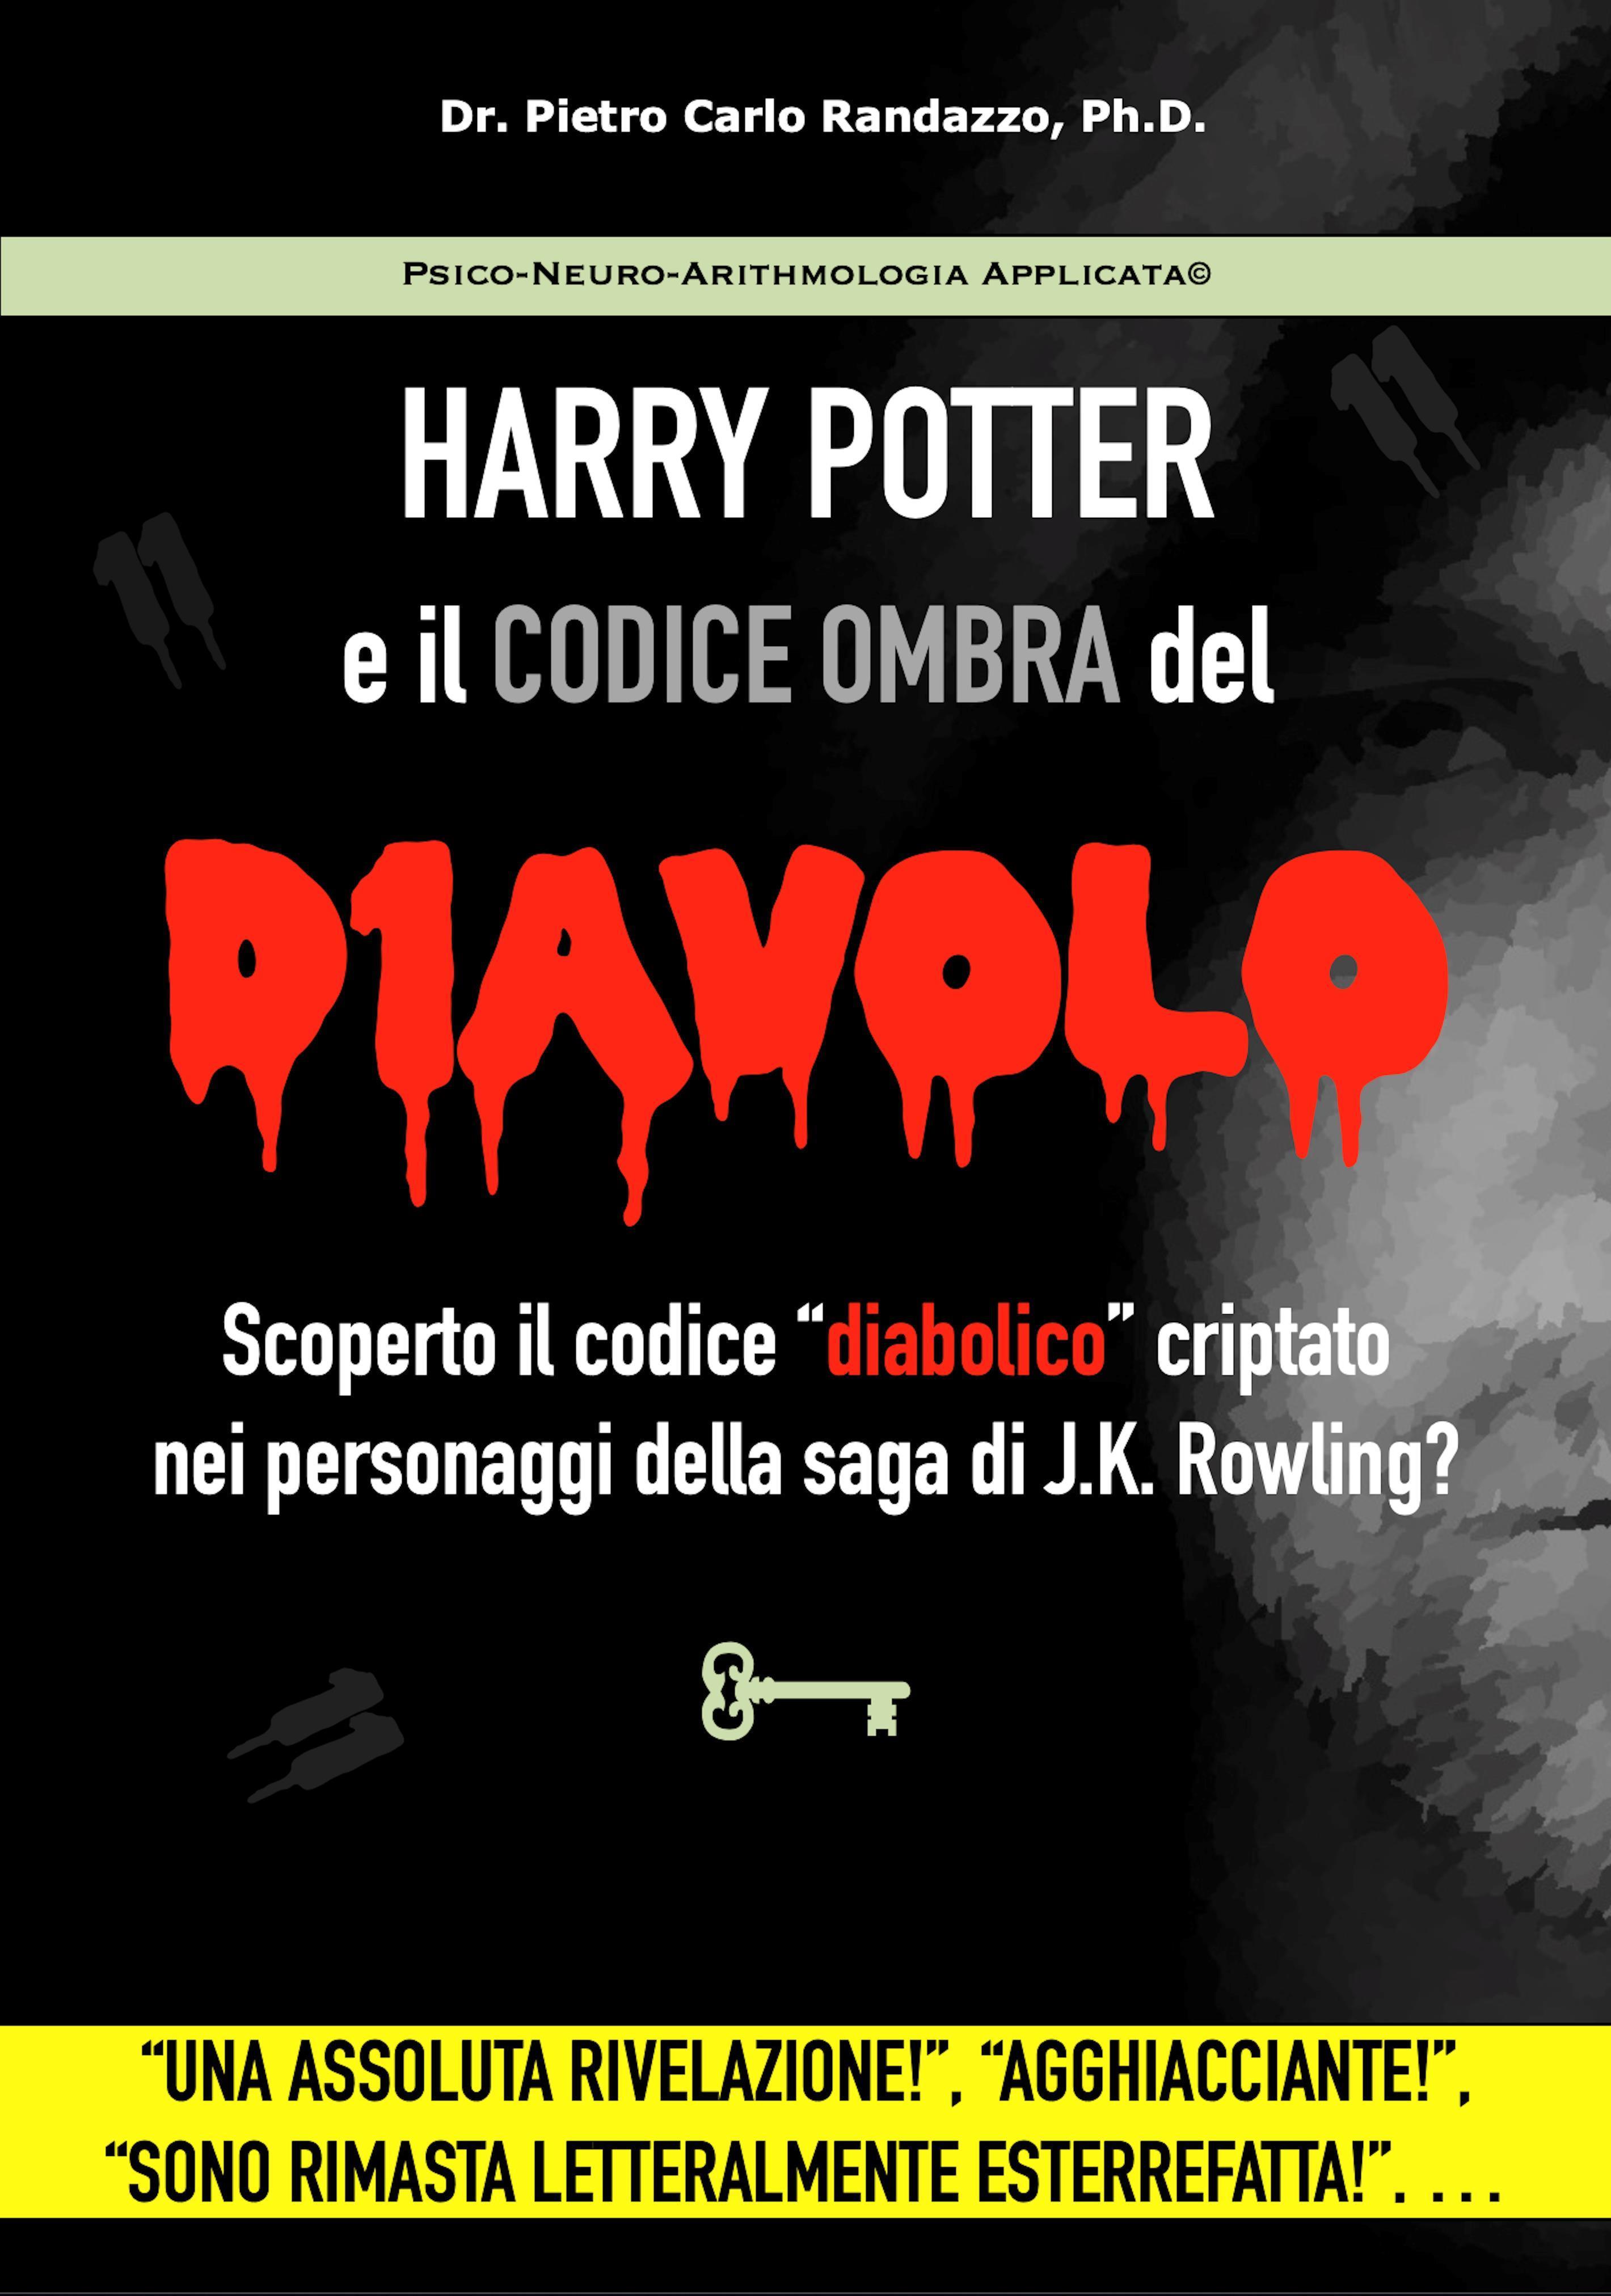 Harry Potter il Codice Ombra del Diavolo - Scoperto il codice “diabolico” criptato nei personaggi della saga di J.K. Rowling?